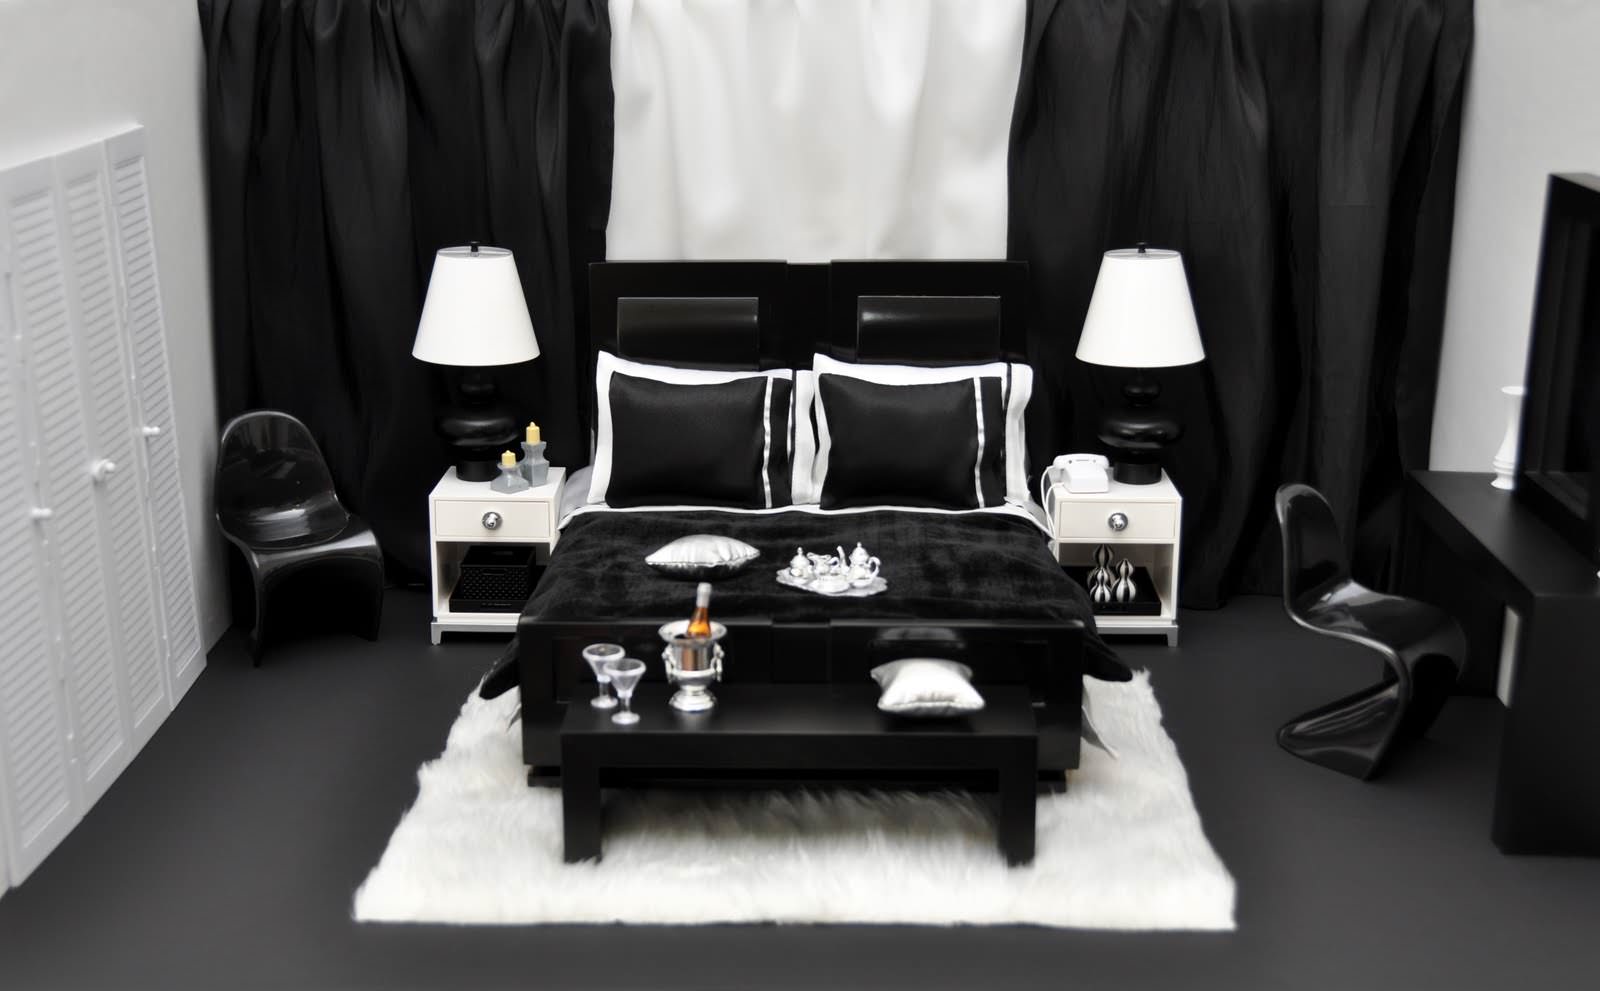 Спальня с темной мебелью - инструкция, как сочетать темную мебель в интерьере современной спальни (120 фото новинок)